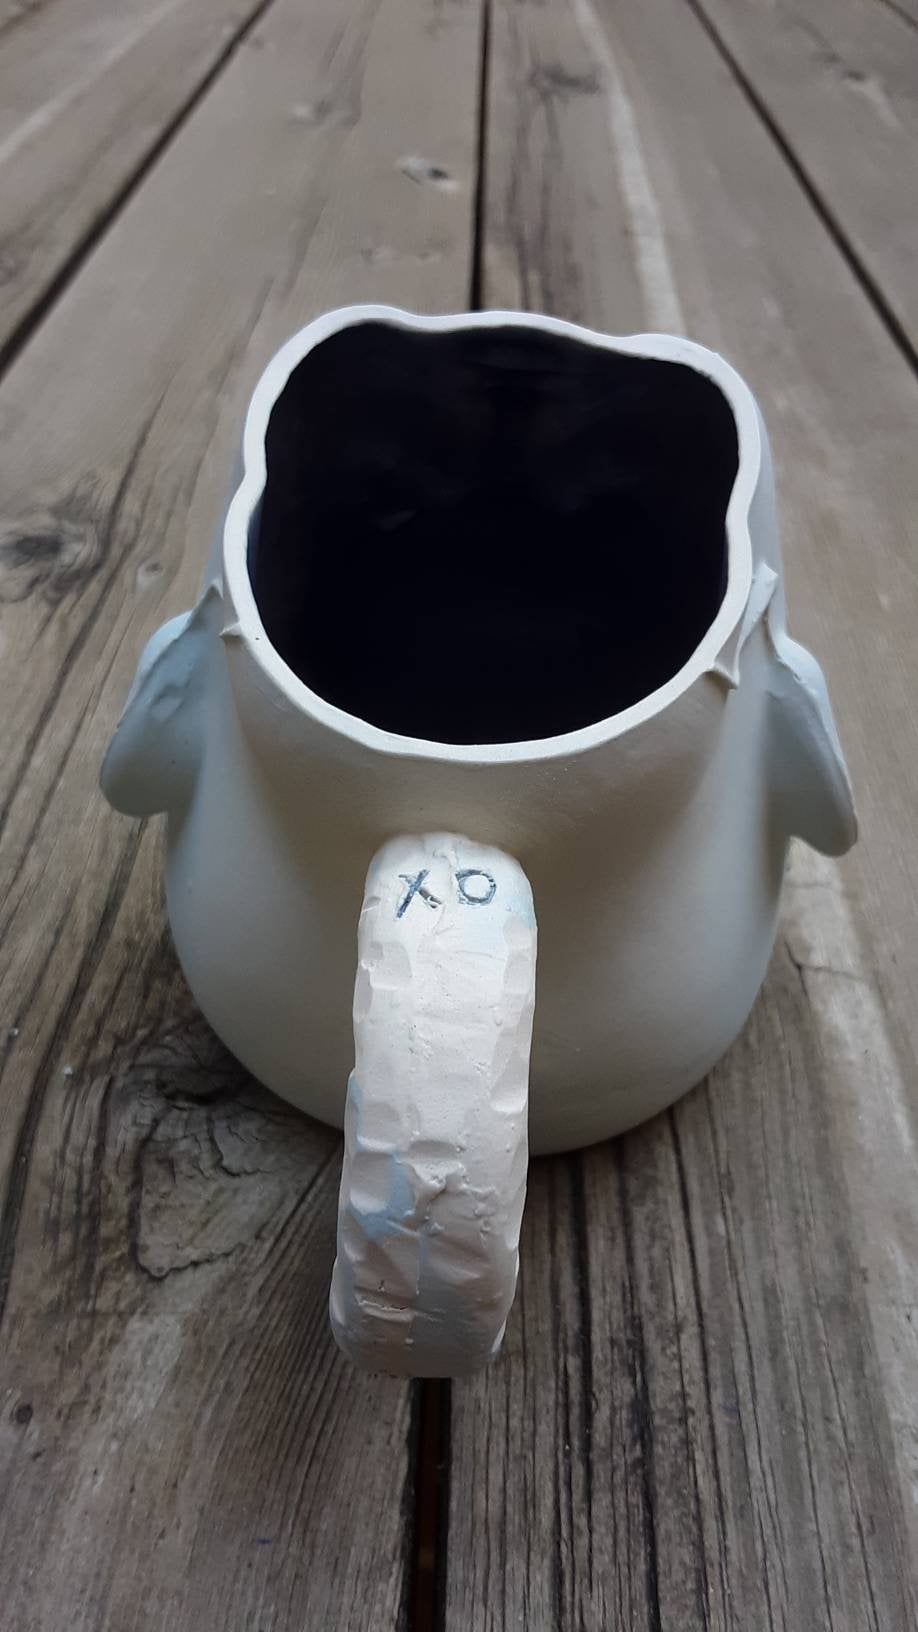 XO Baby Head Mug